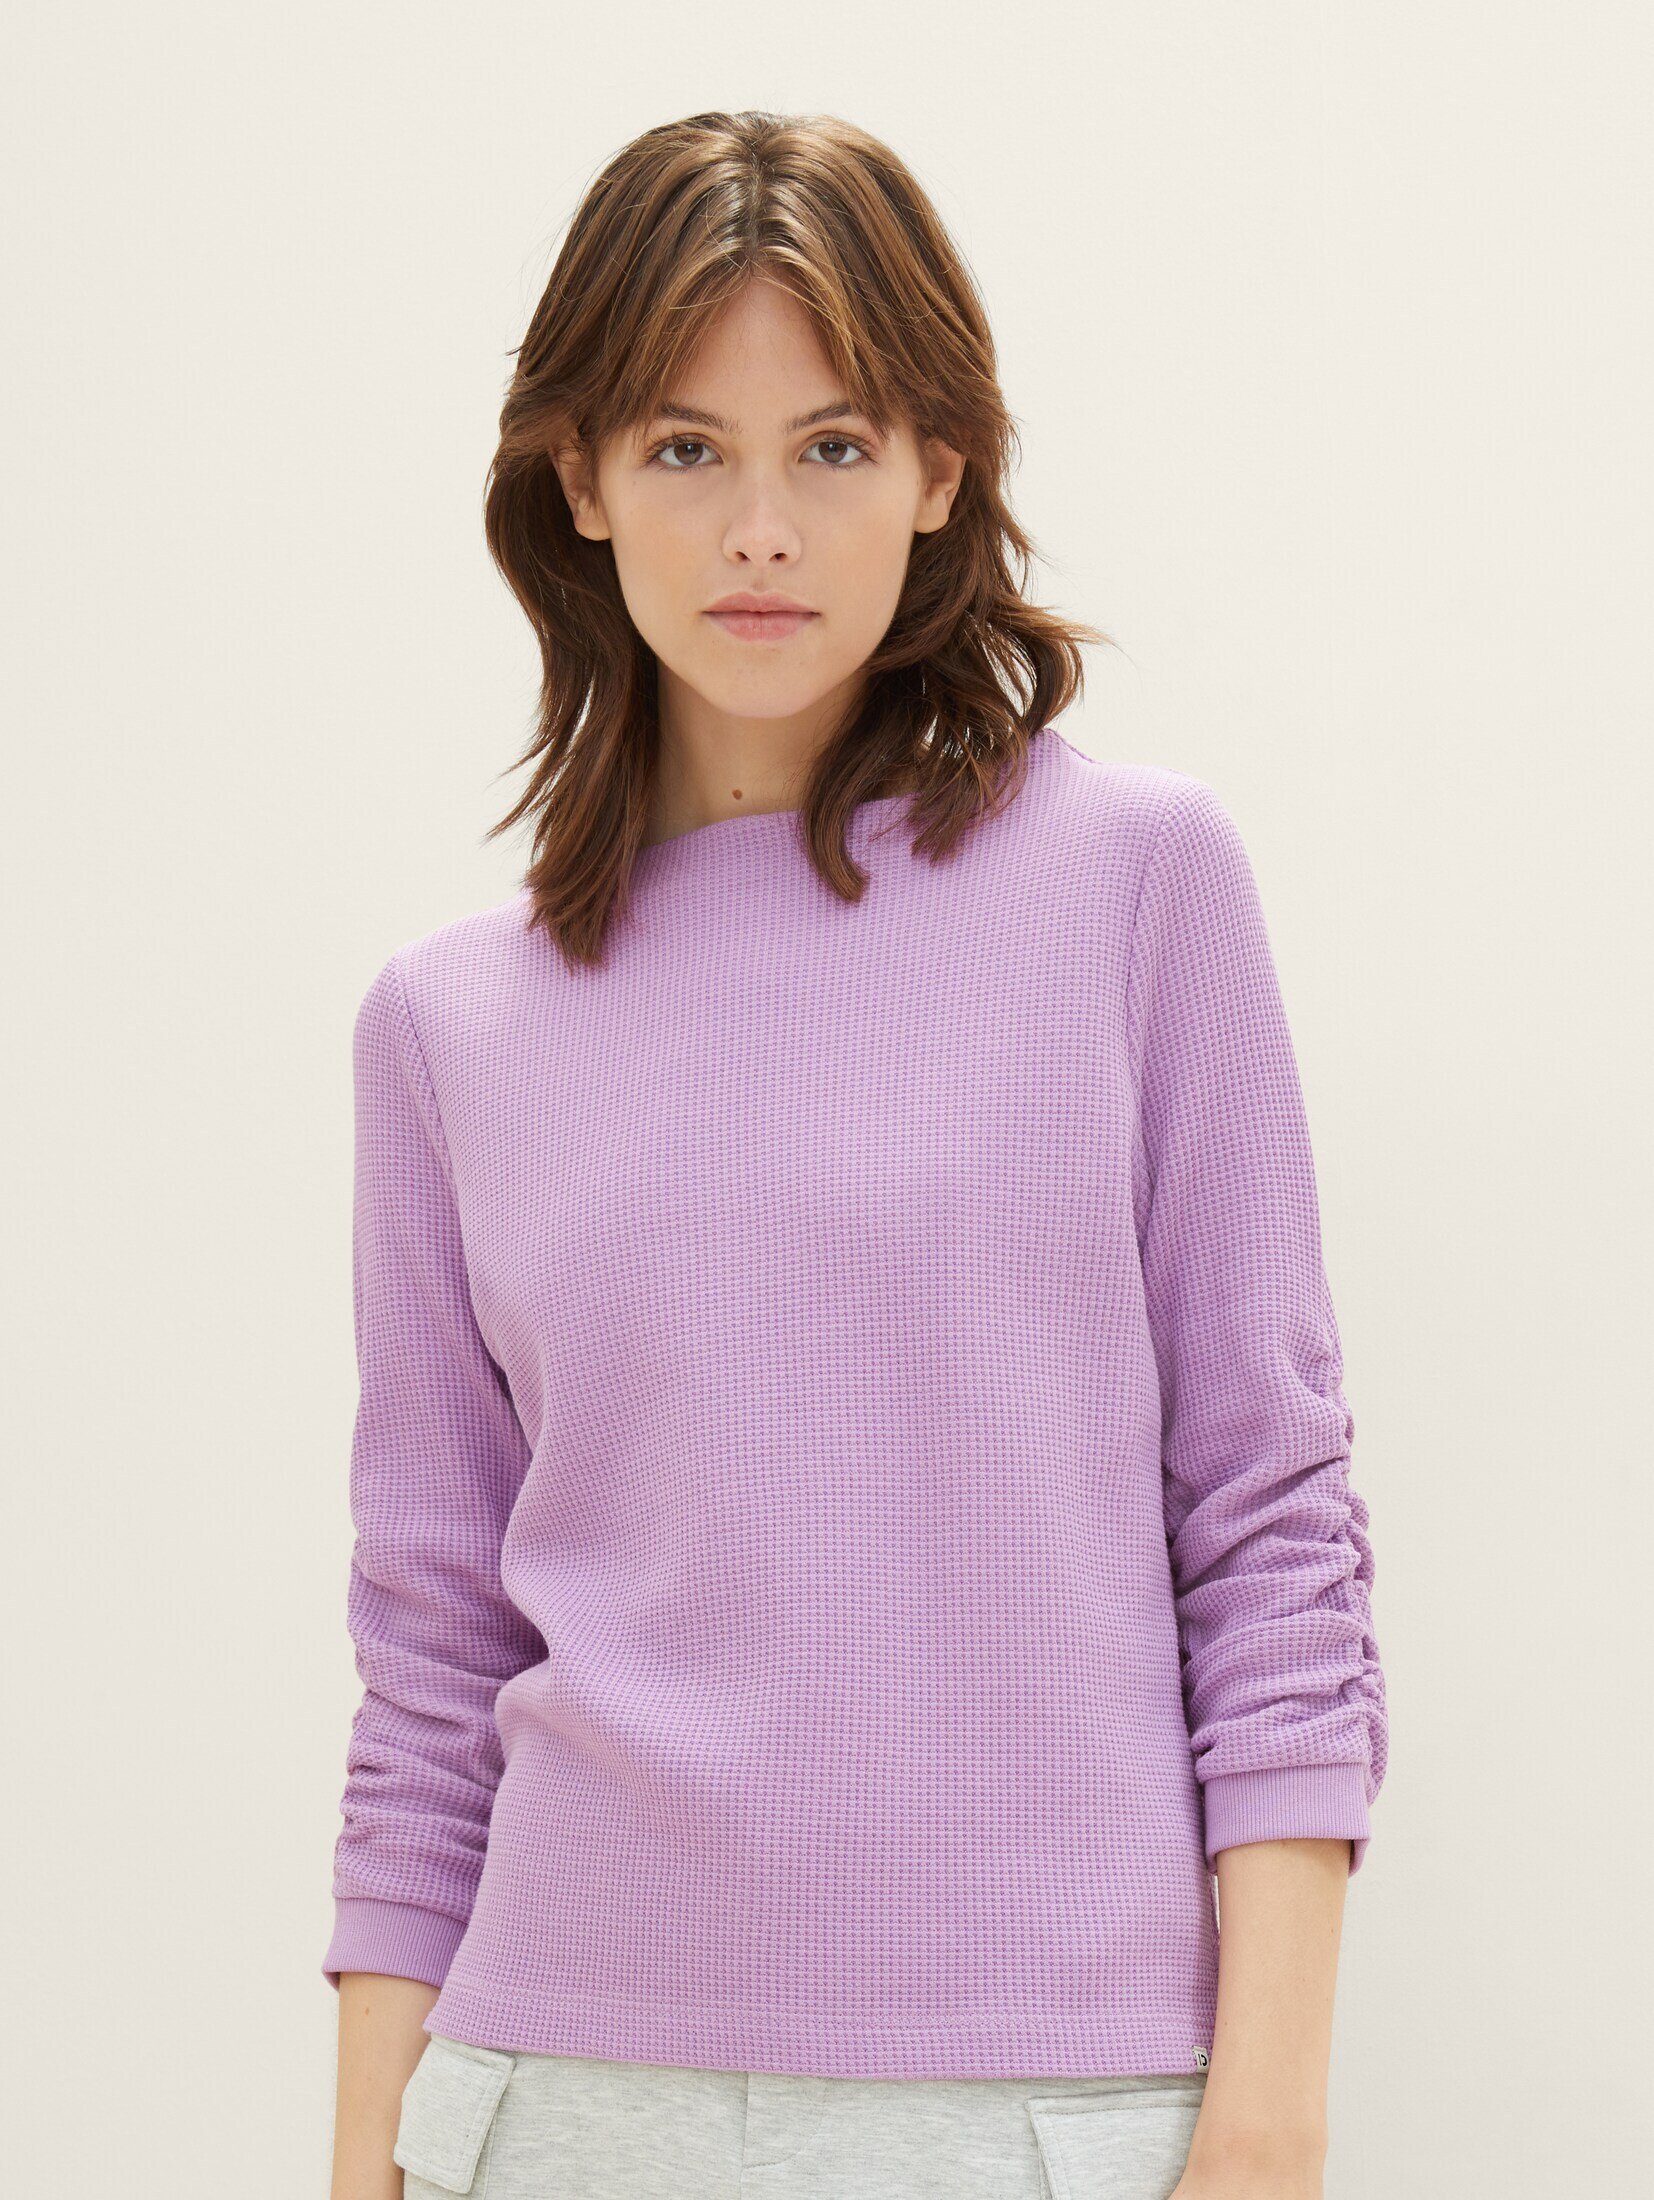 Falten mit Sweatshirt heather TAILOR TOM purple Sweatshirt Denim